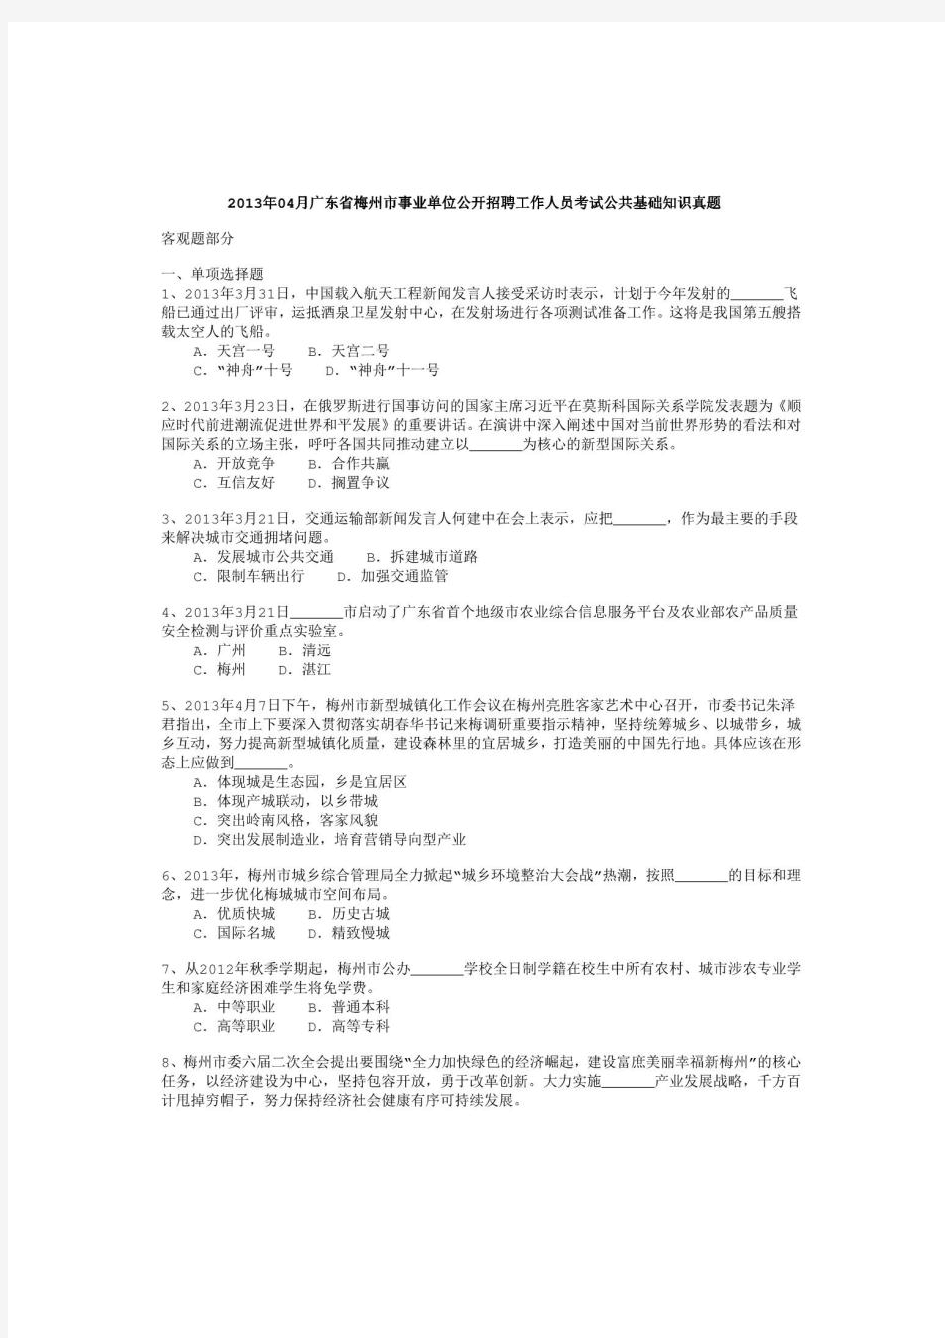 2013年广东省梅州市事业单位公开招聘工作人员考试《公共基础知识》真题及详解-b